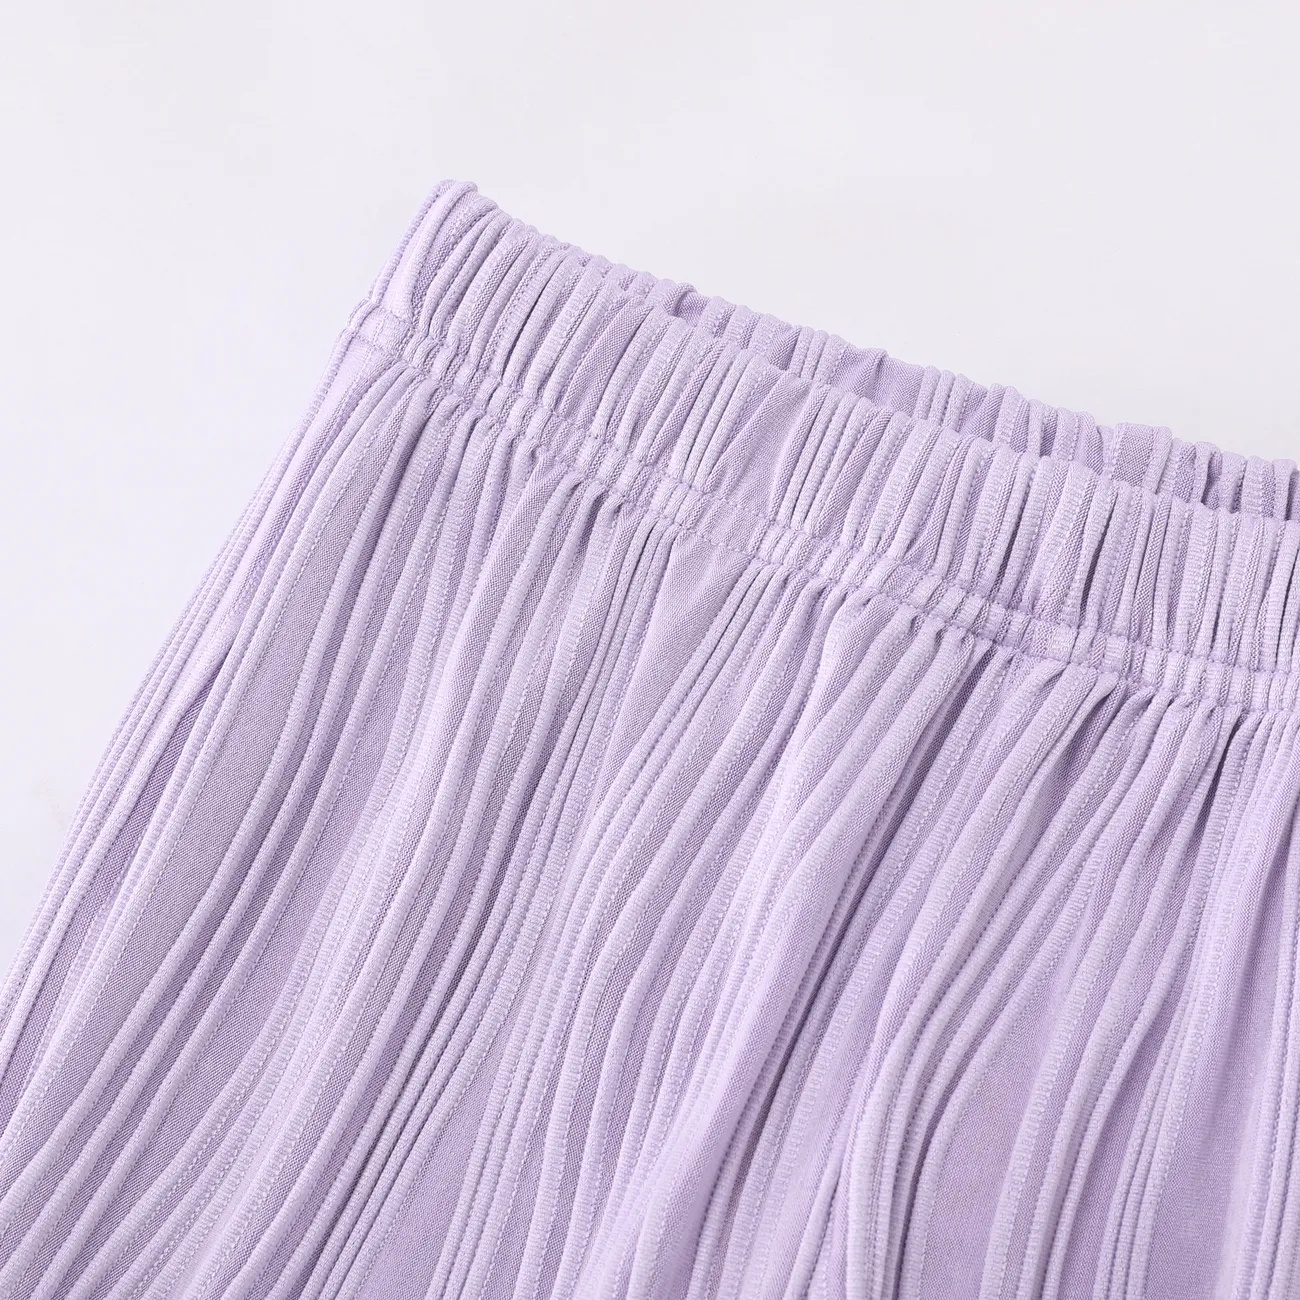 Pantaloni per l'aria condizionata Cool Wave della bambina Viola big image 1